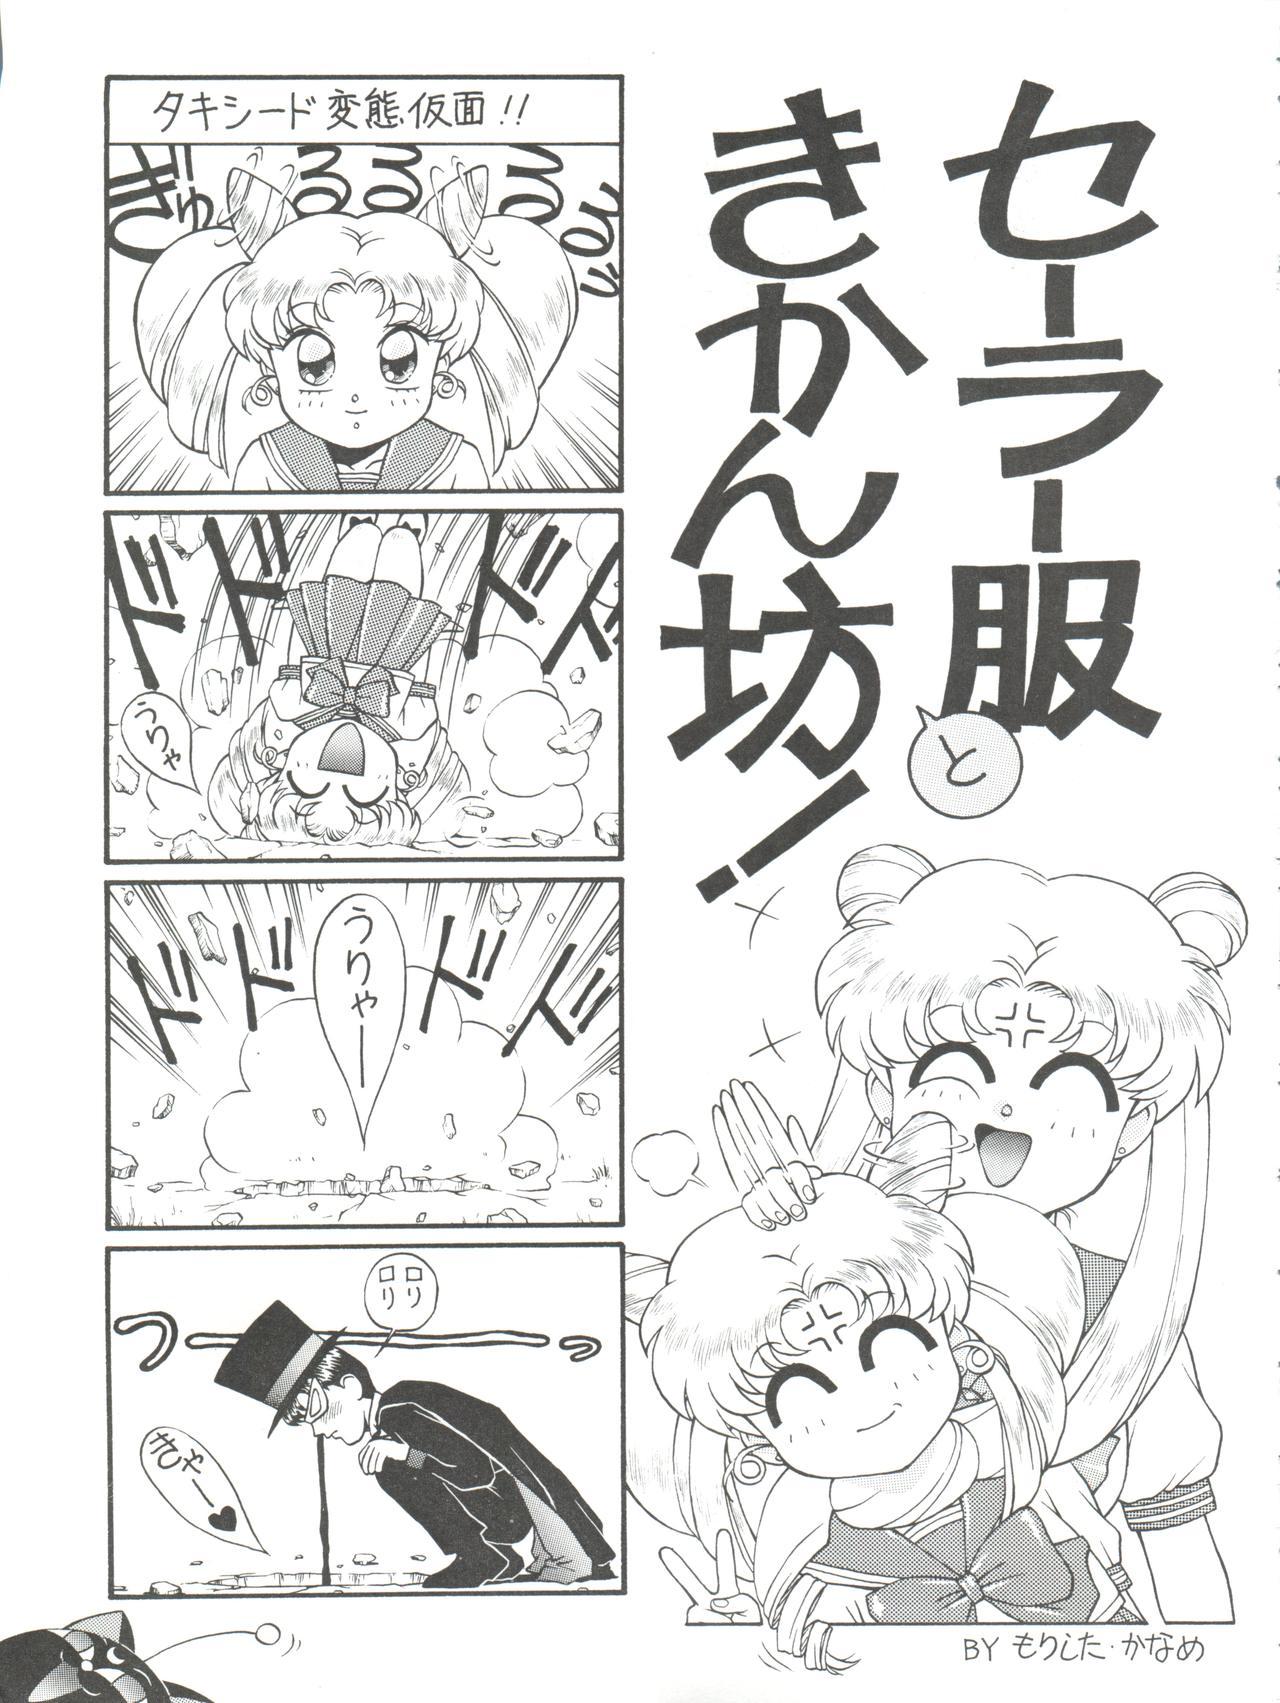 Rimjob NANIWA-YA FINAL DRESS UP! - Sailor moon Slayers Hime-chans ribbon Ng knight lamune and 40 Brave express might gaine Gay Outdoor - Page 11